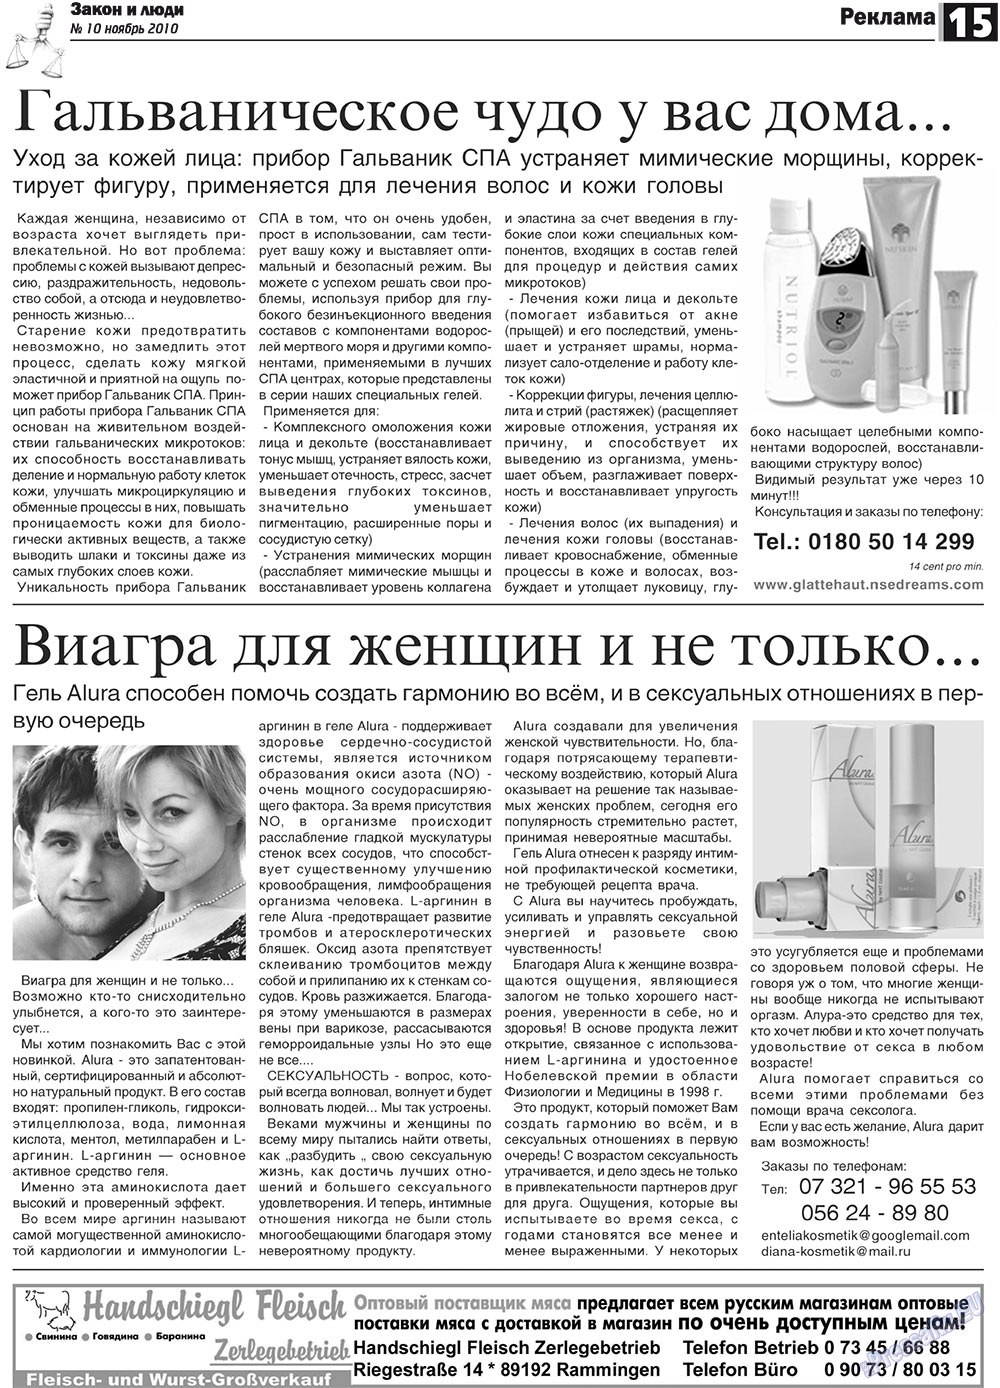 Закон и люди, газета. 2010 №10 стр.15